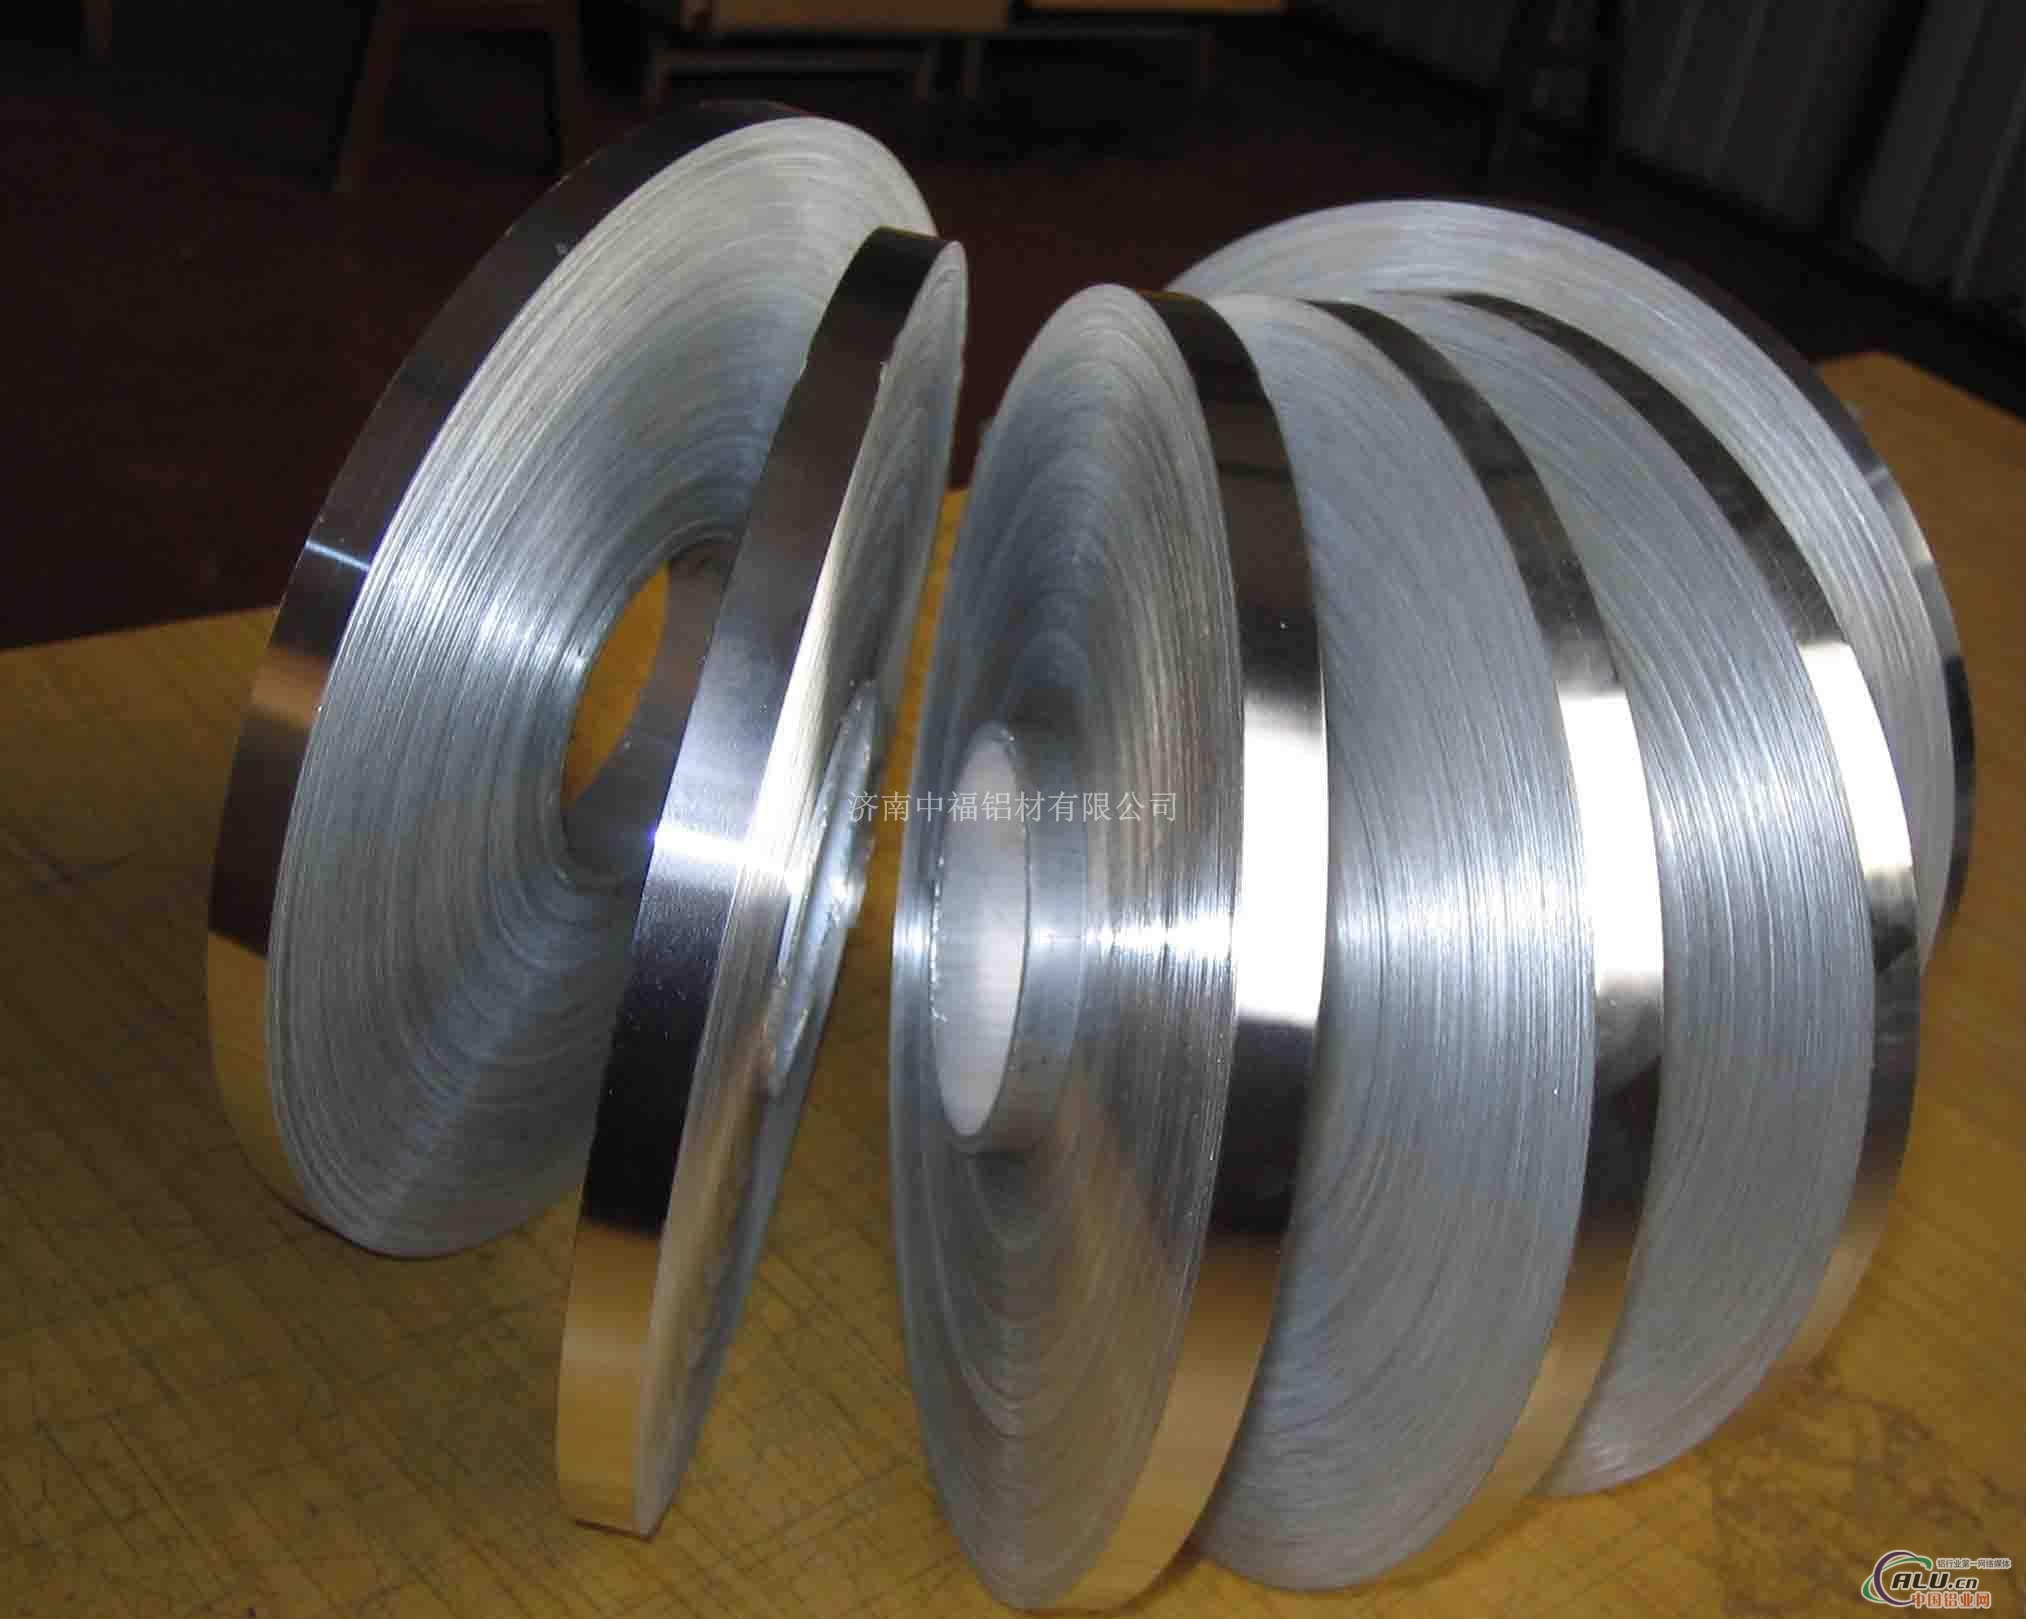 特殊规格铝带加工定做铝带厂家